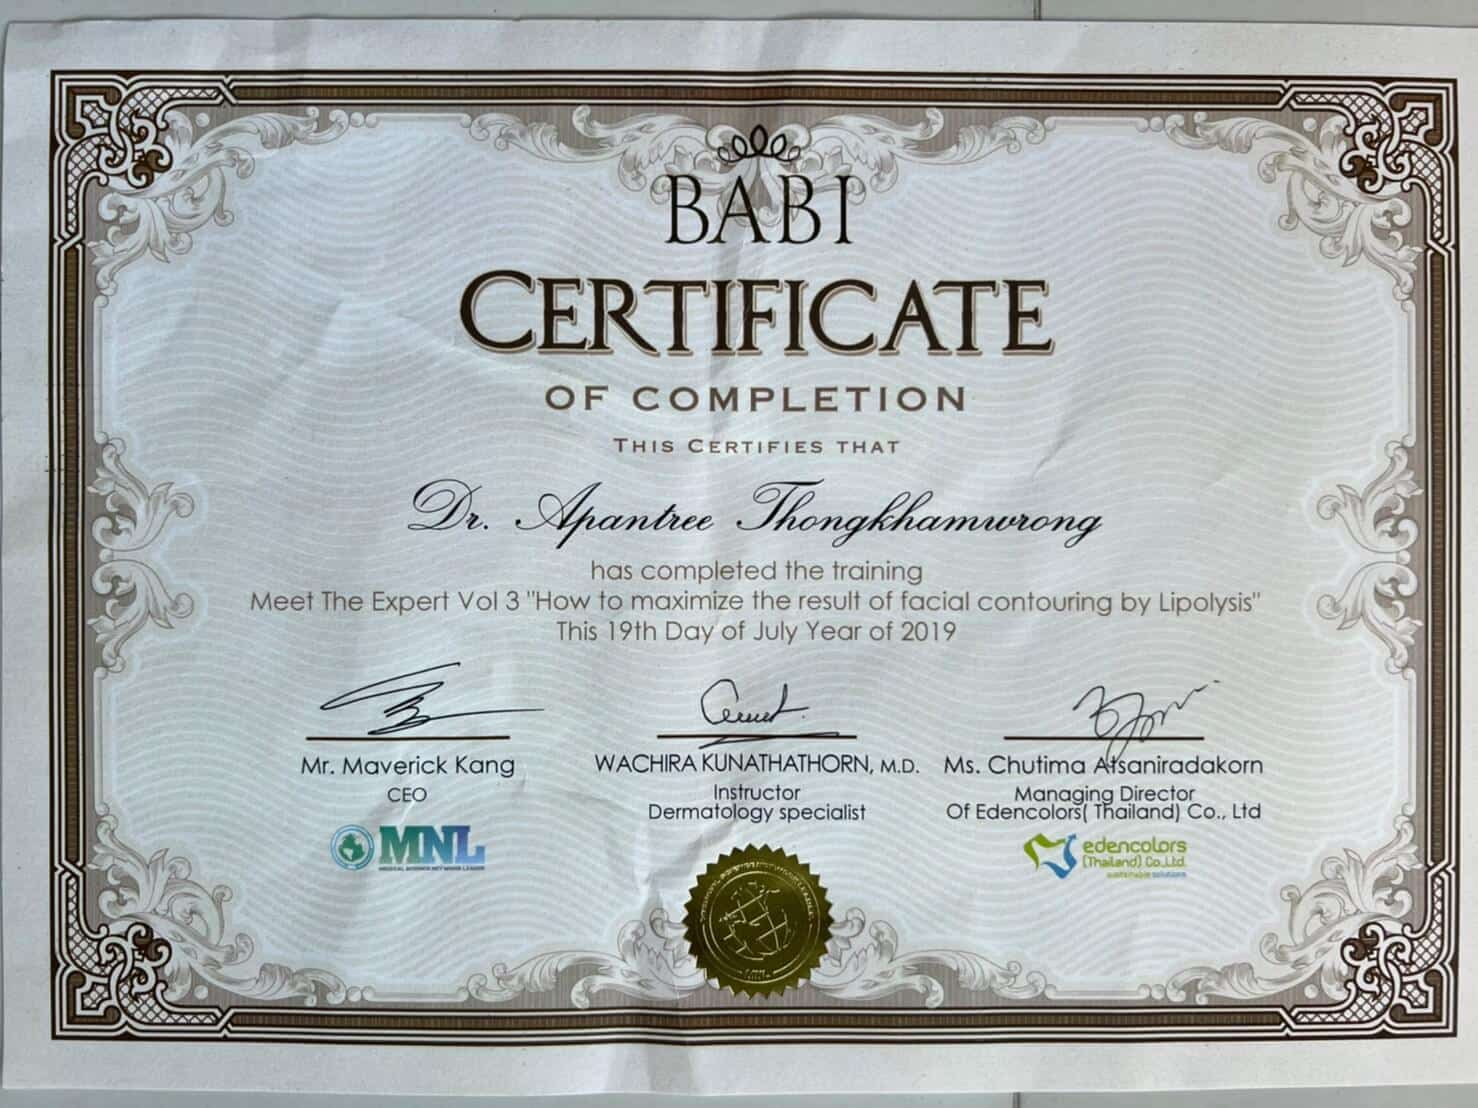 dr-Apantree-Thongkhamwrong-Certificate-6